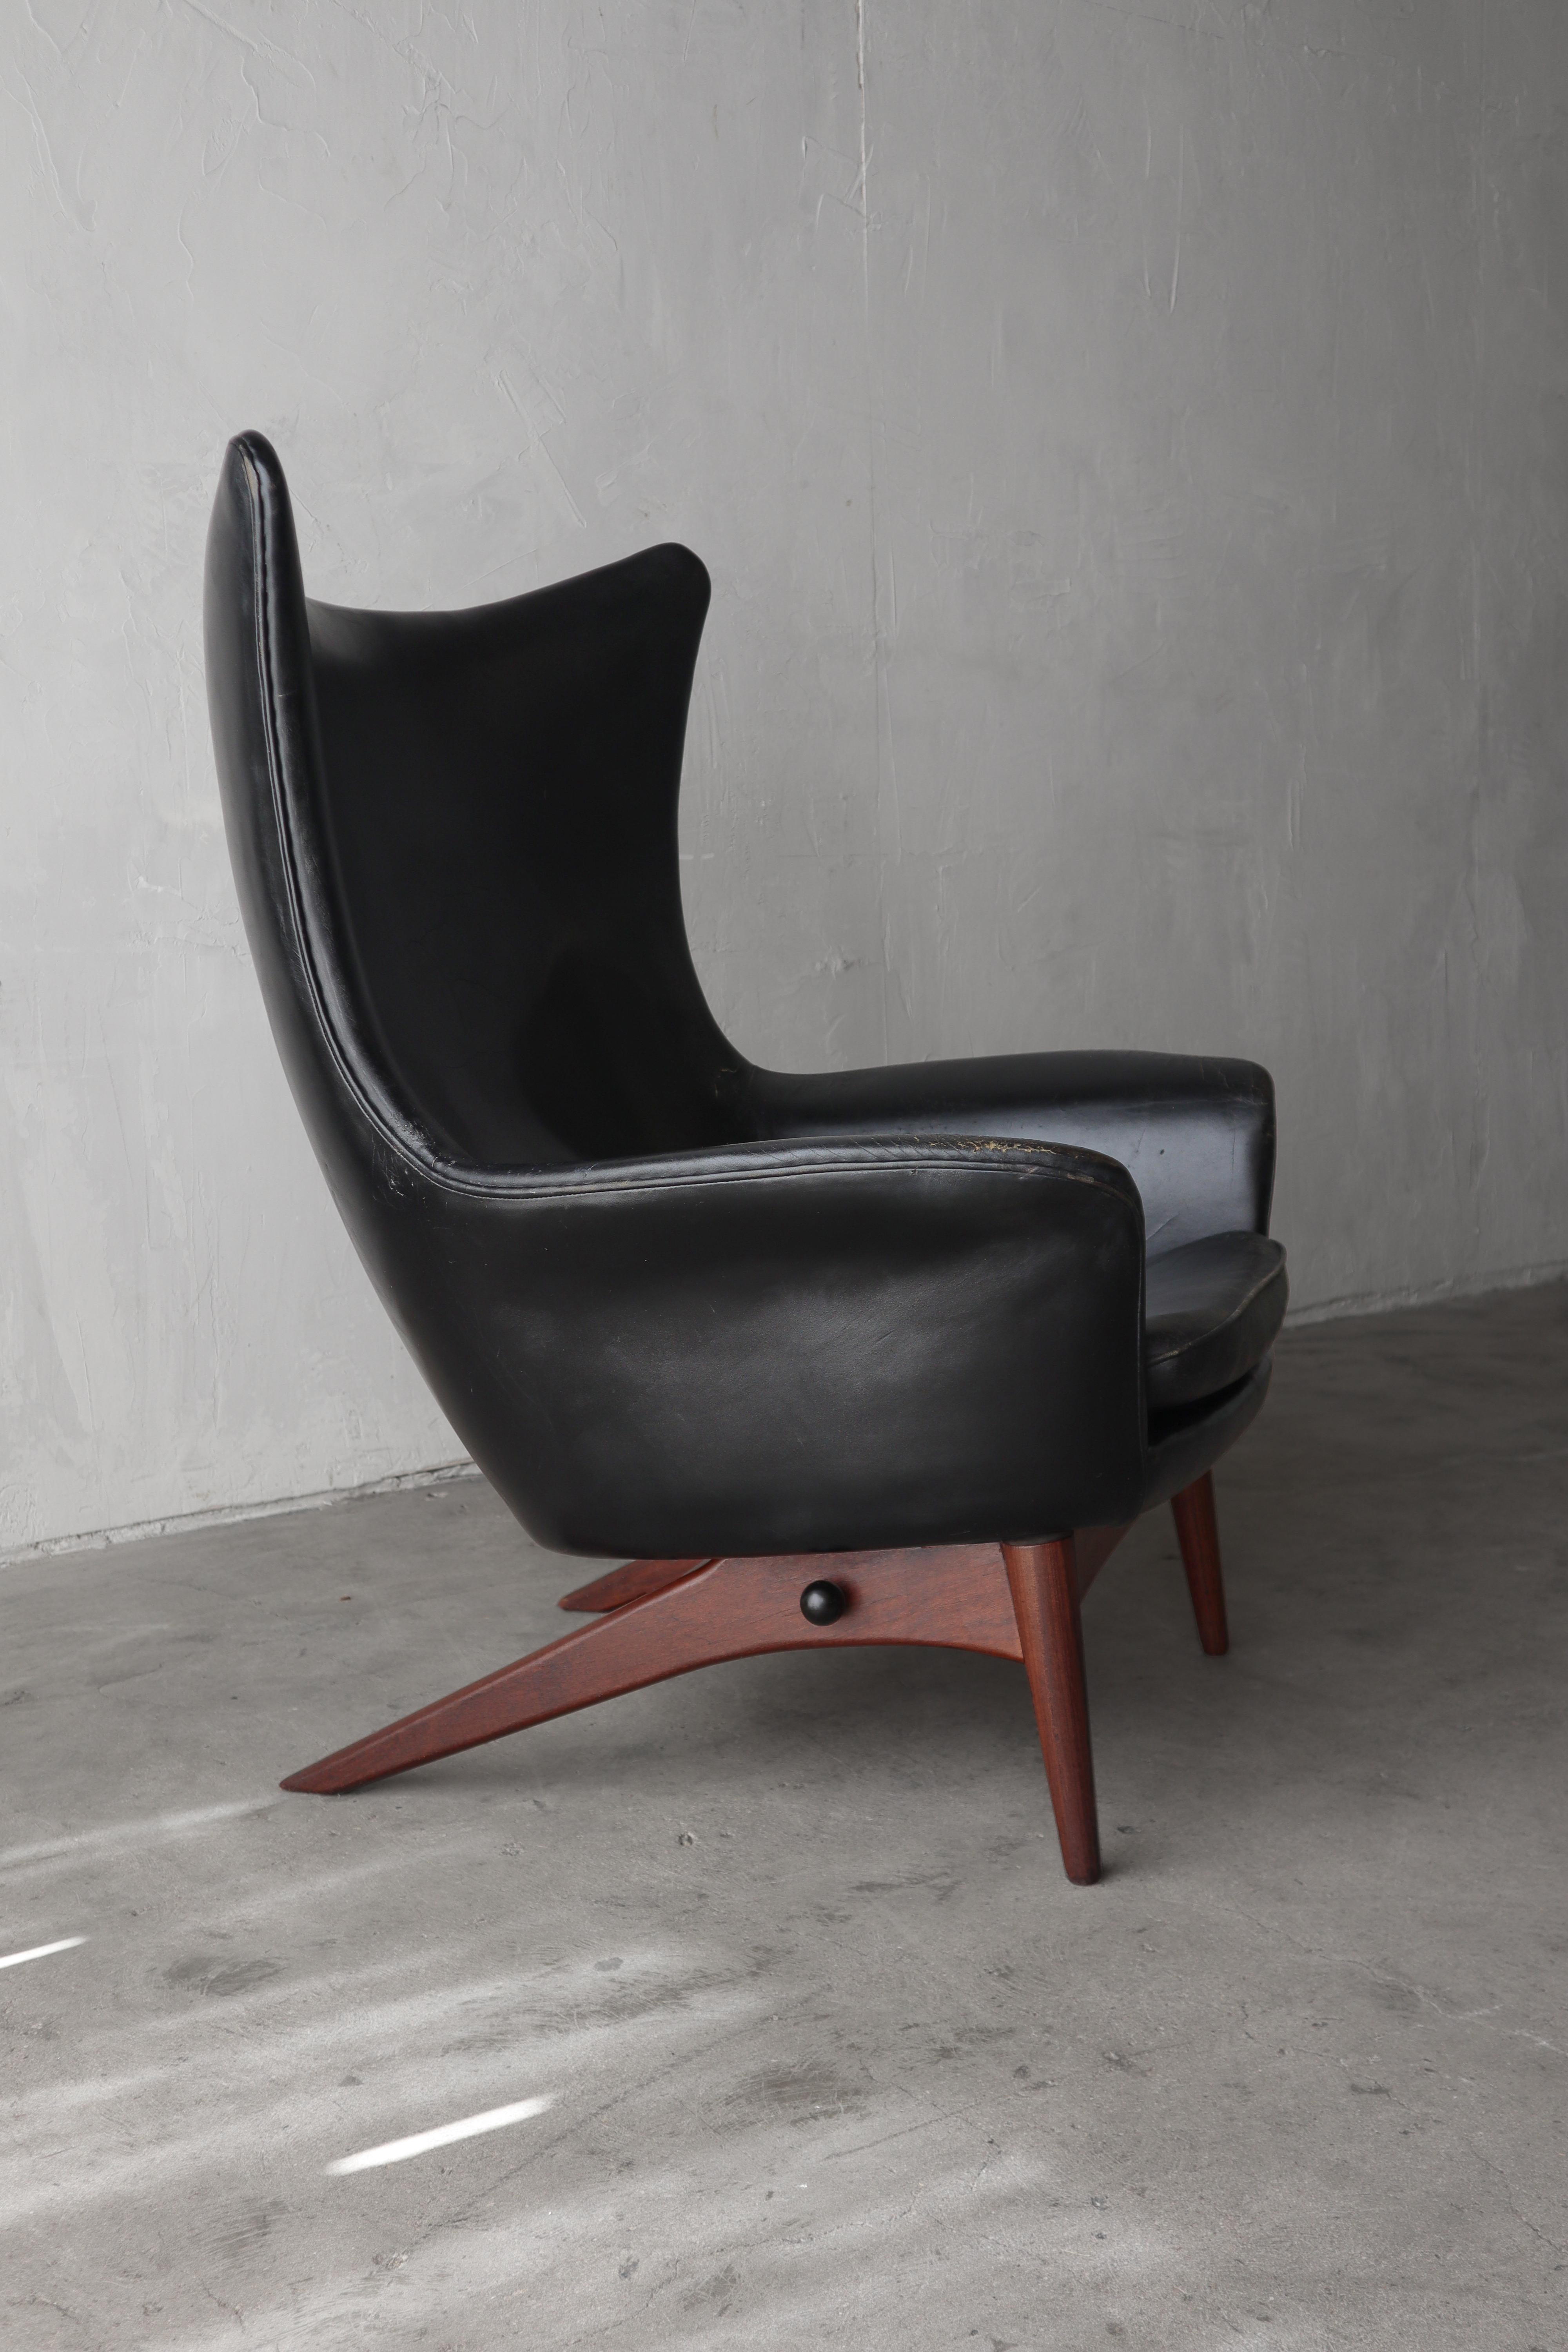 Cette sculpturale chaise longue inclinable de Henry Walter Klein est la quintessence du design danois.   

Le fauteuil est doté d'un magnifique design en forme de dos d'aile et d'une fonction d'inclinaison verrouillable à plusieurs positions pour un